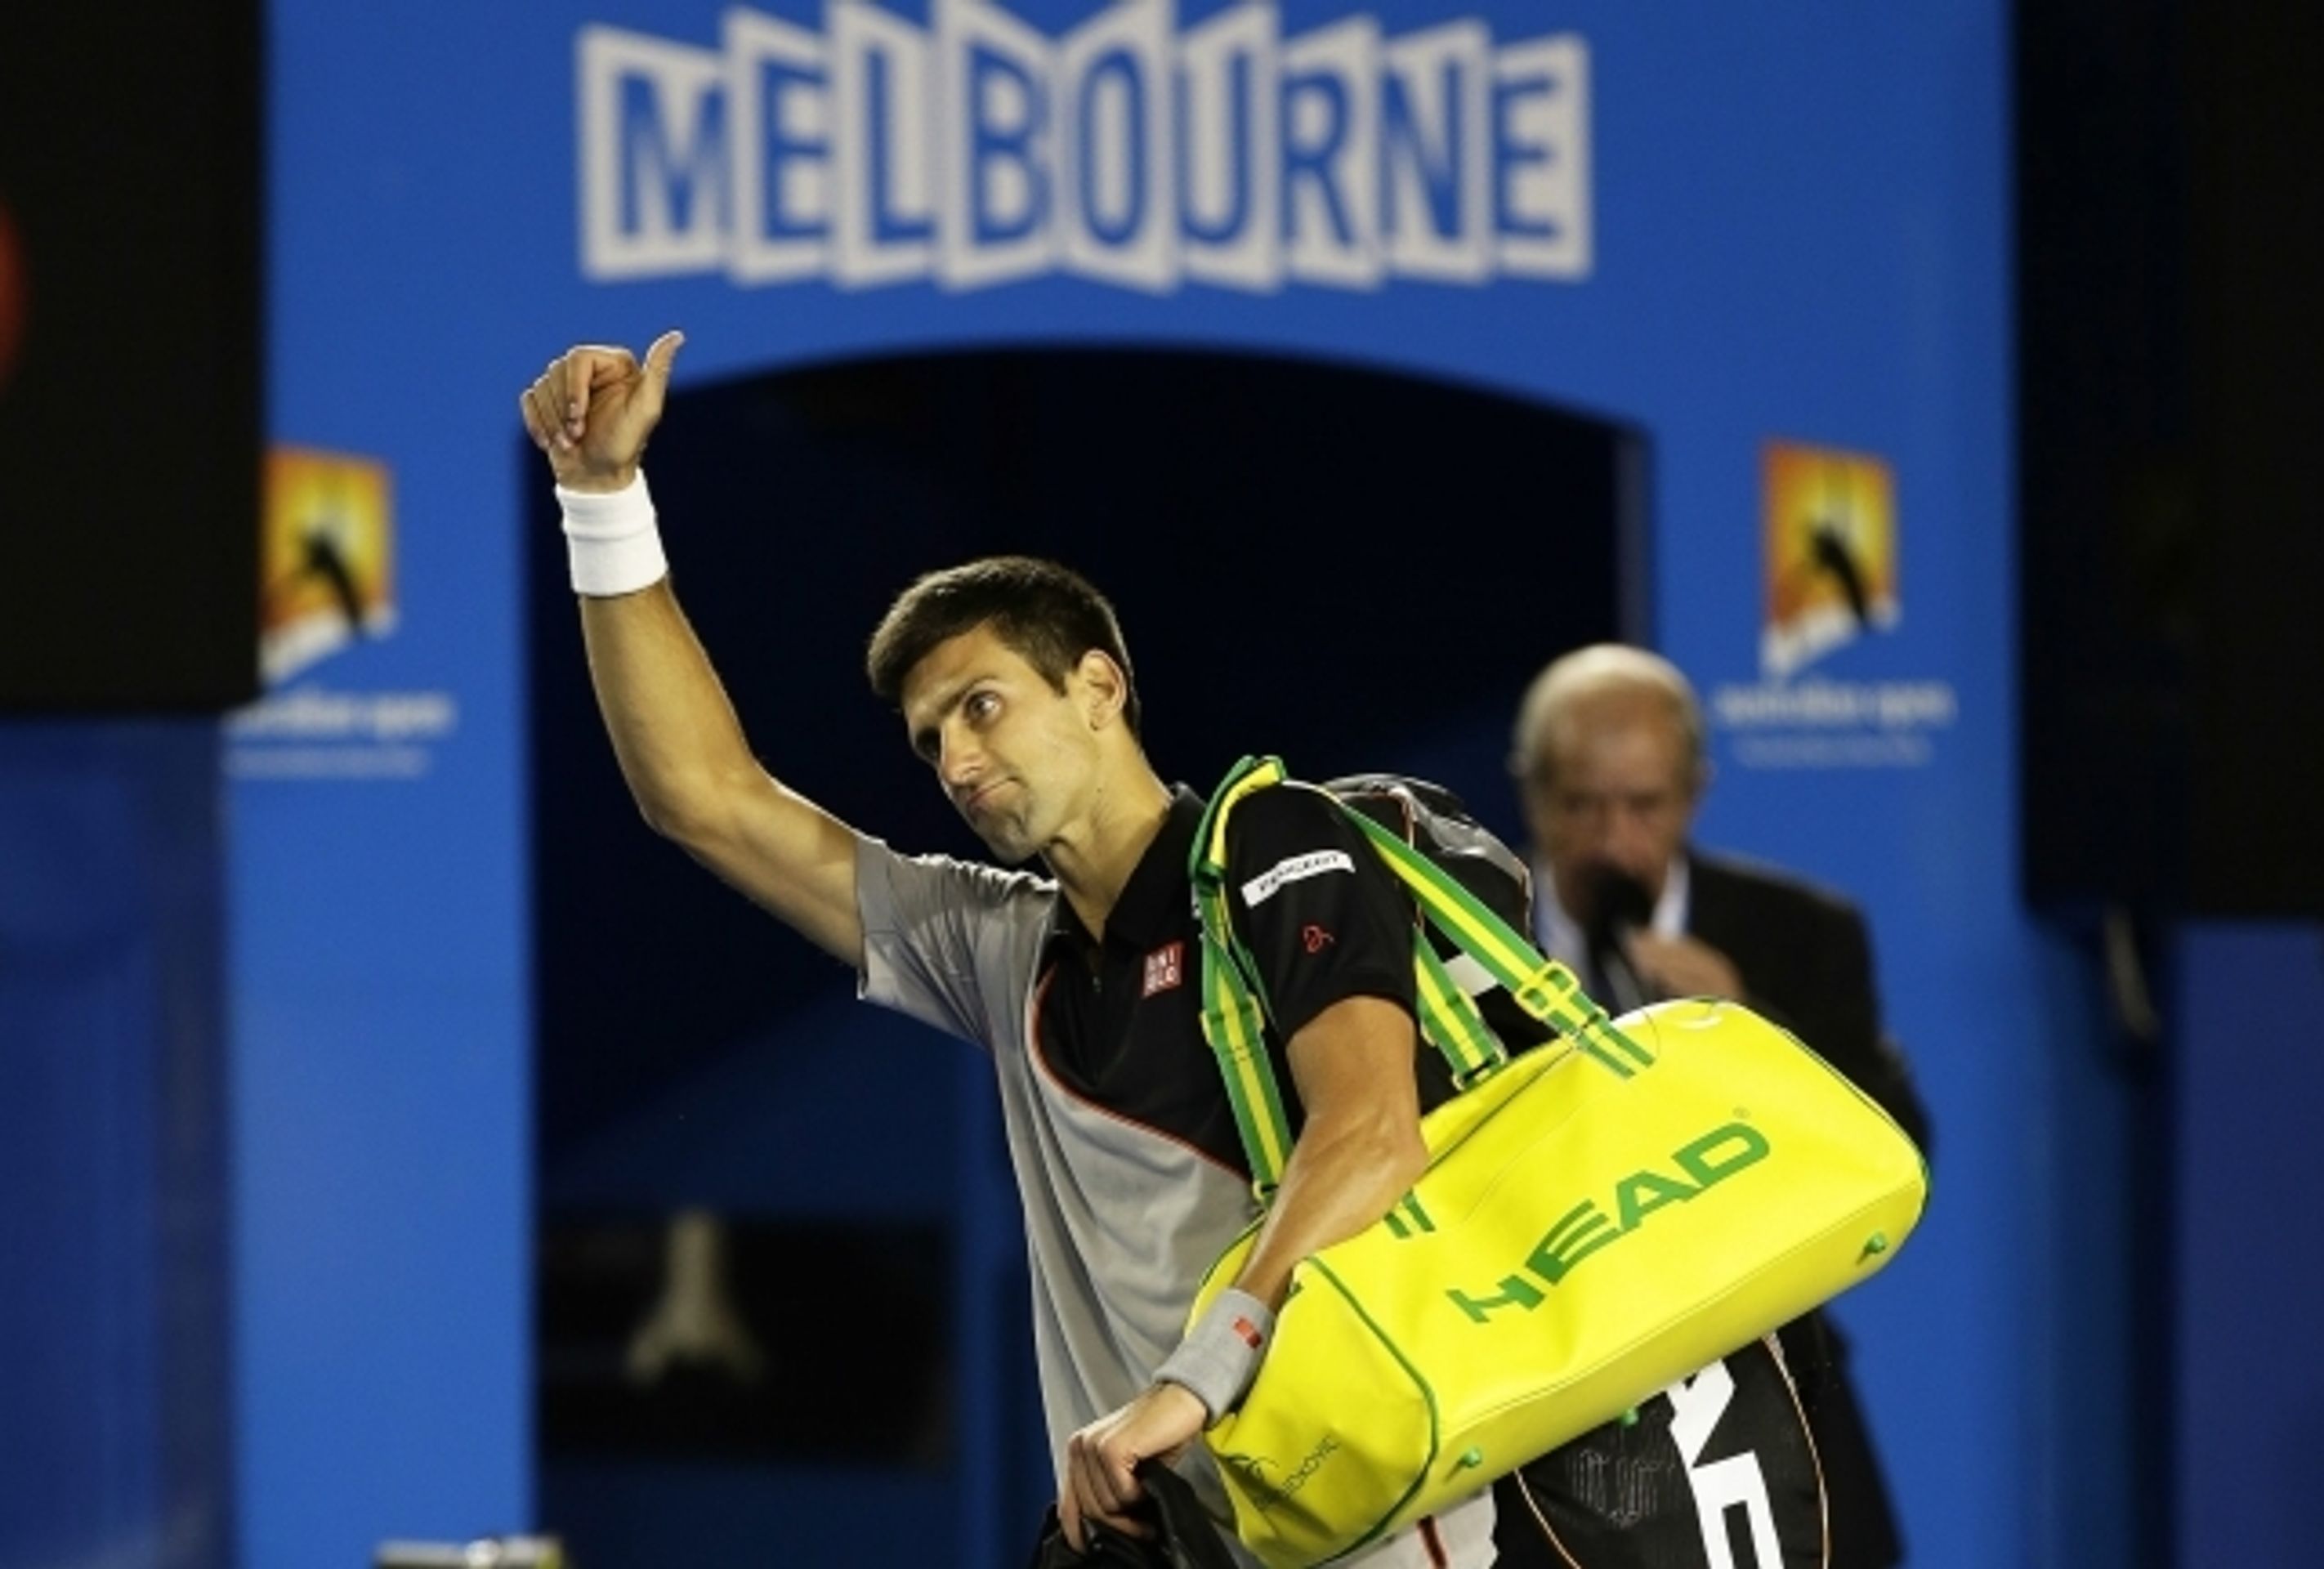 Stanislas Wawrinka porazil na Australian Open Novaka Djokoviče - 7 - GALERIE: Stanislas Wawrinka porazil na Australian Open Novaka Djokoviče (5/13)